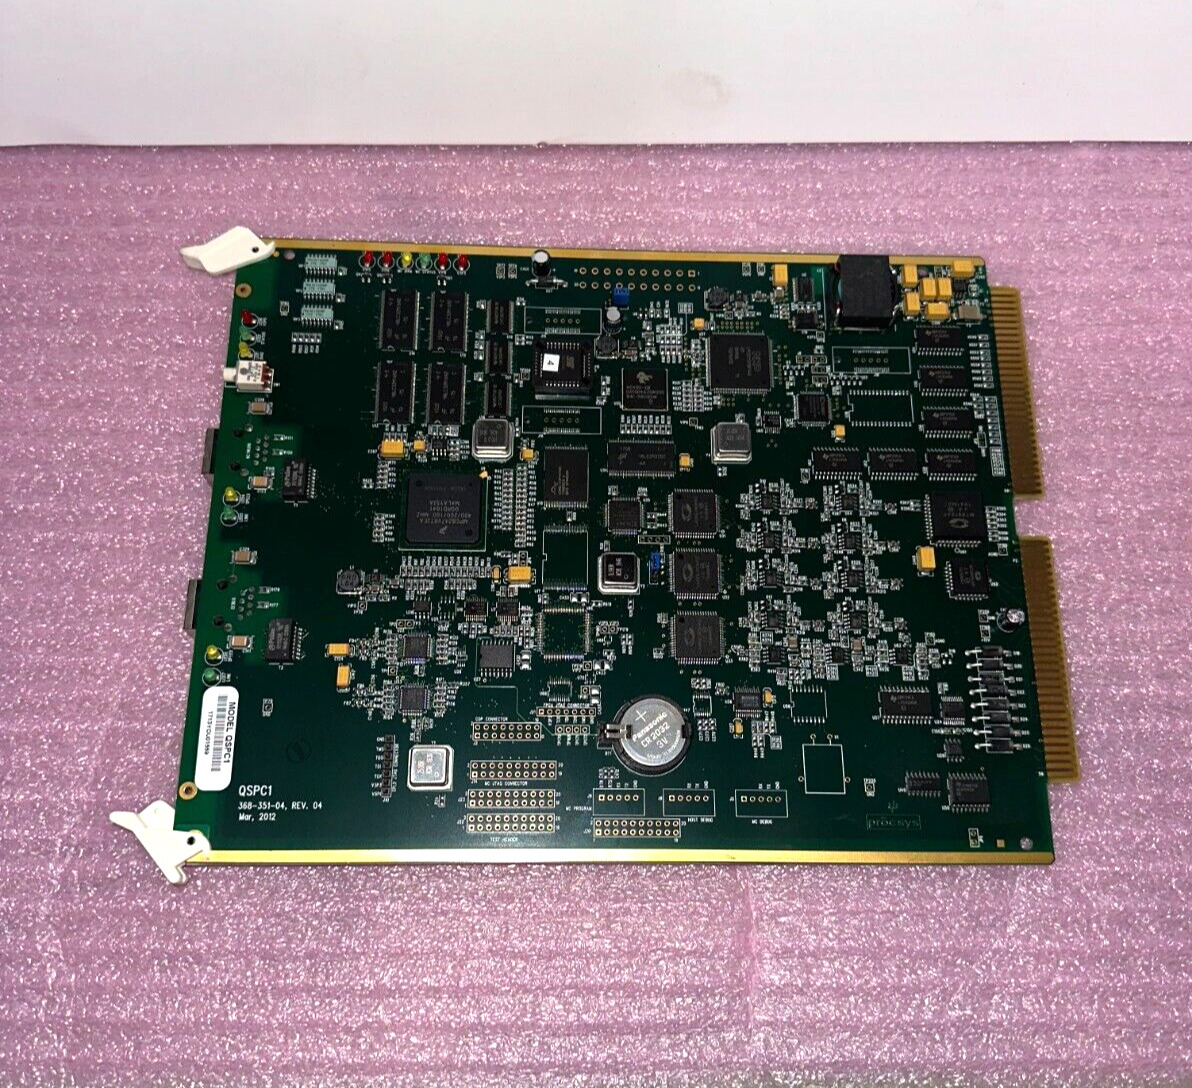 Bogen Quantum Processor Card Model QSPC1  368-351-04 Rev. 04